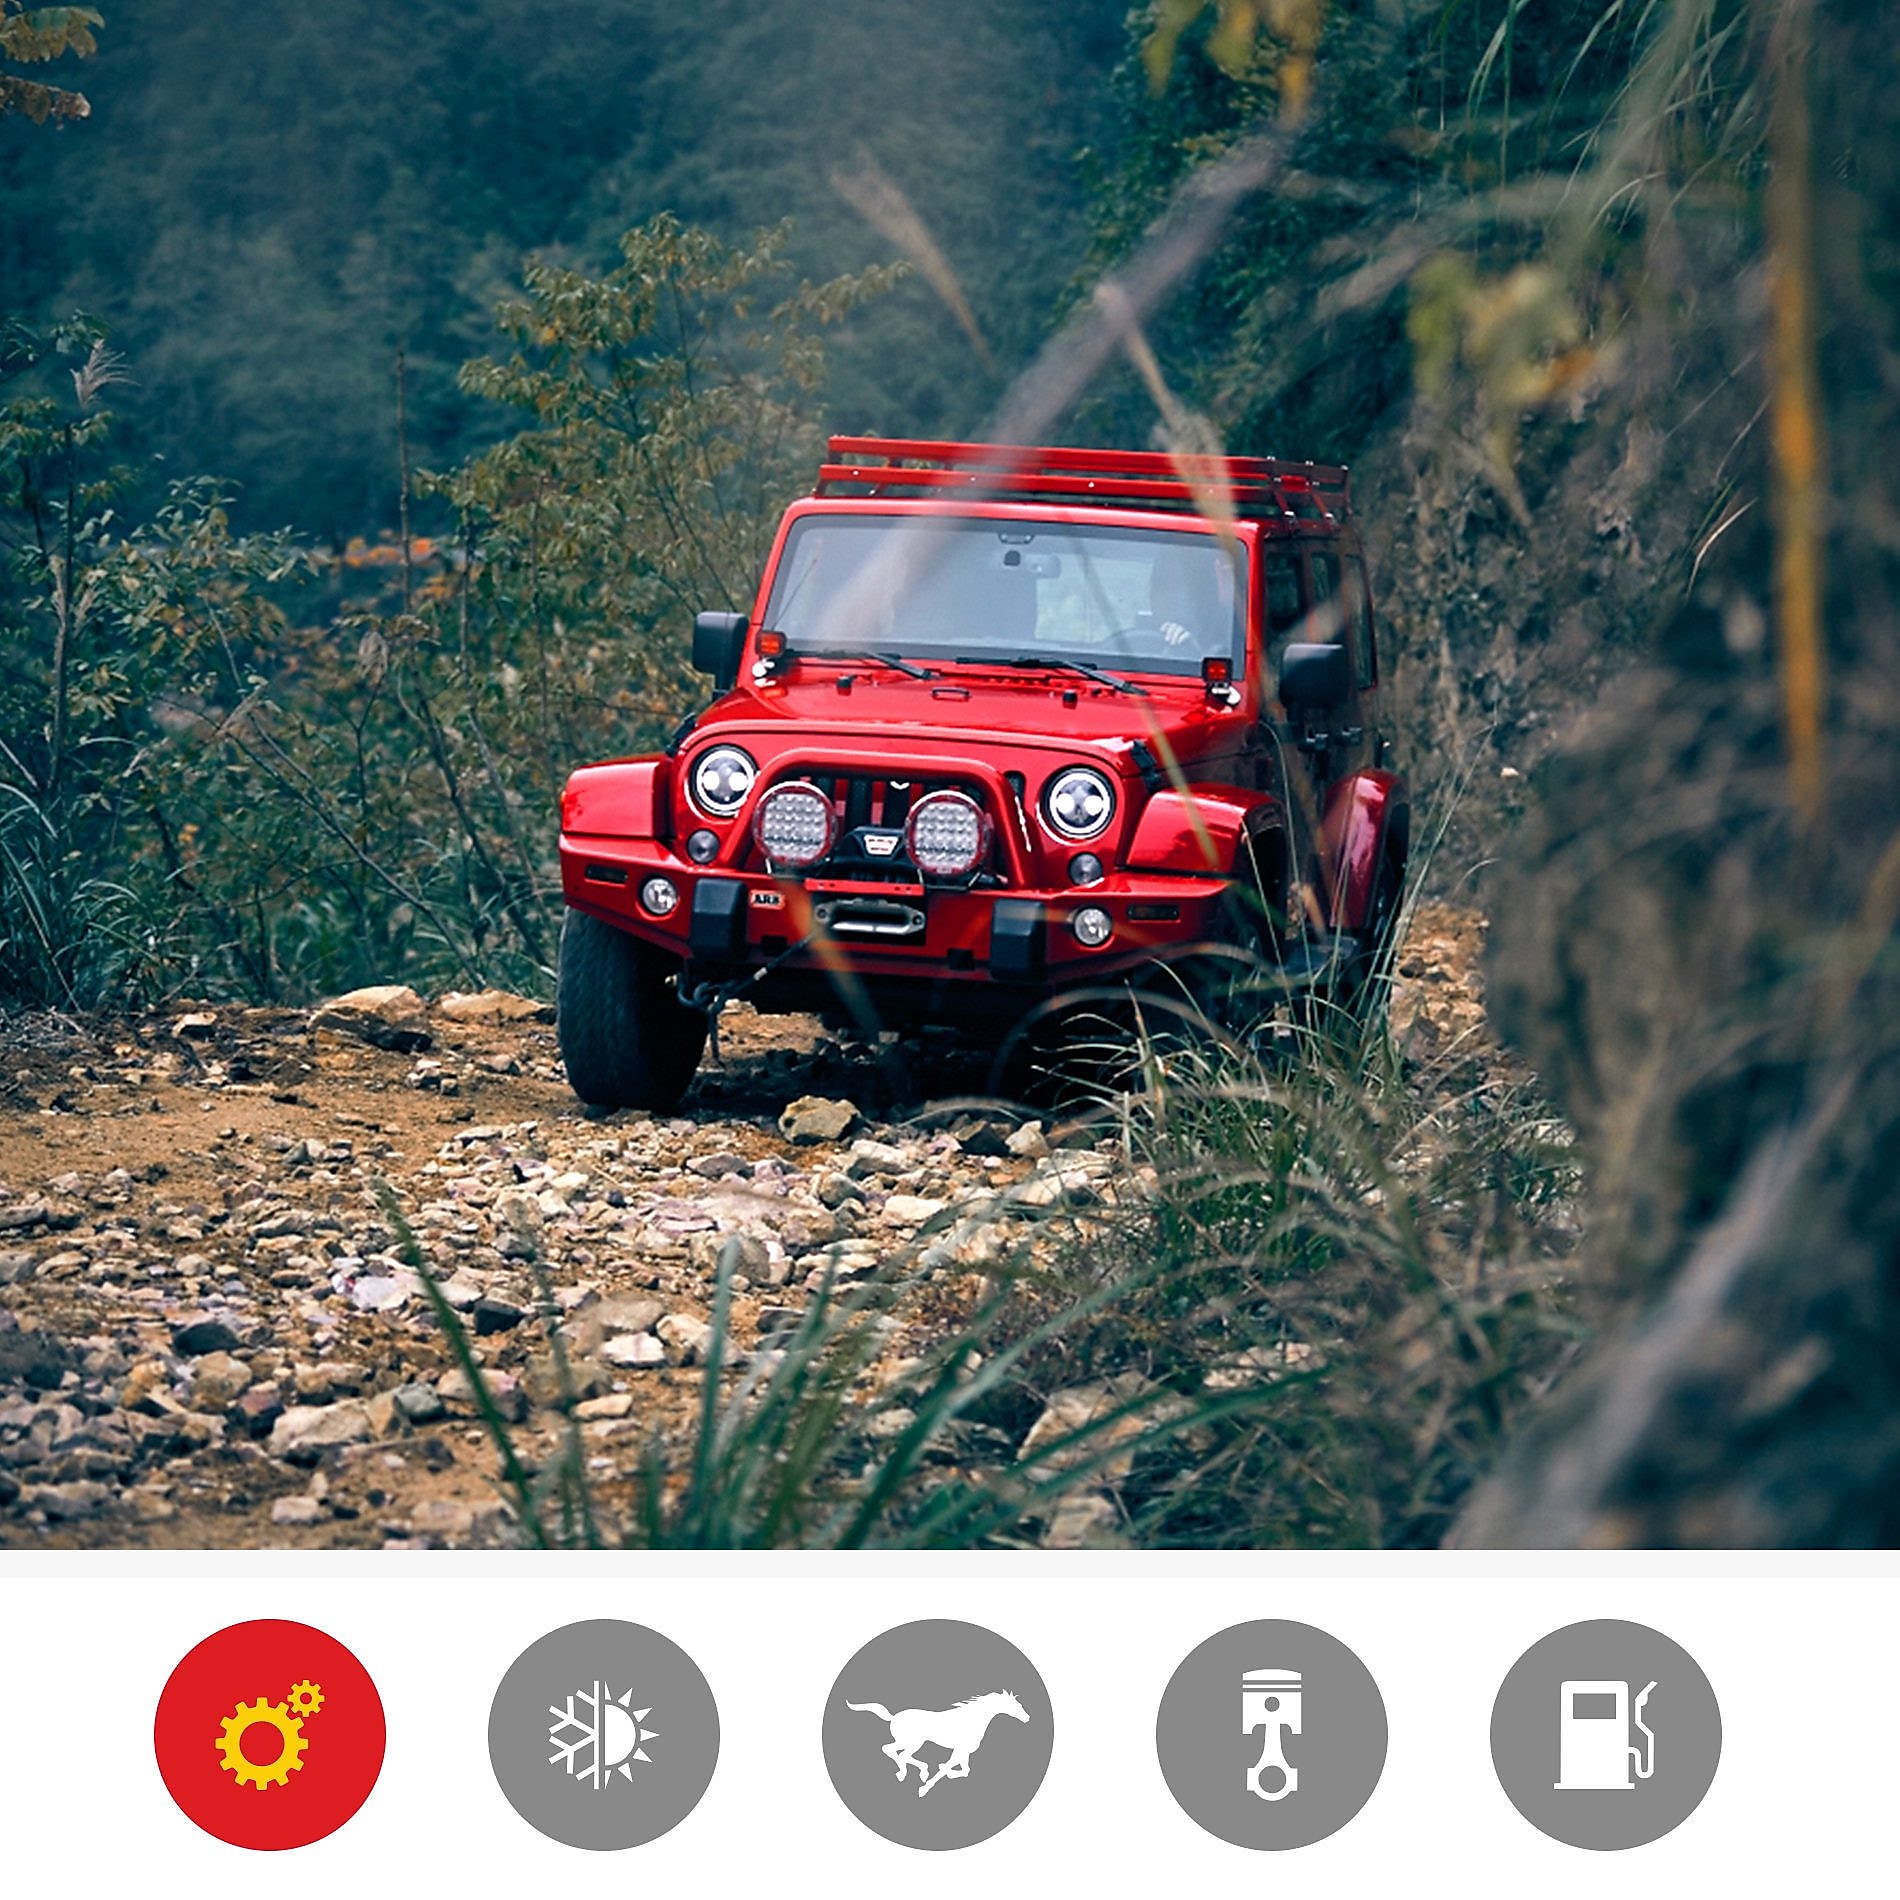 一辆在崎岖地形上行驶的红色吉普展示凯发k8一触即发超凡喜力产品在发动机应力和磨损保护方面的优势